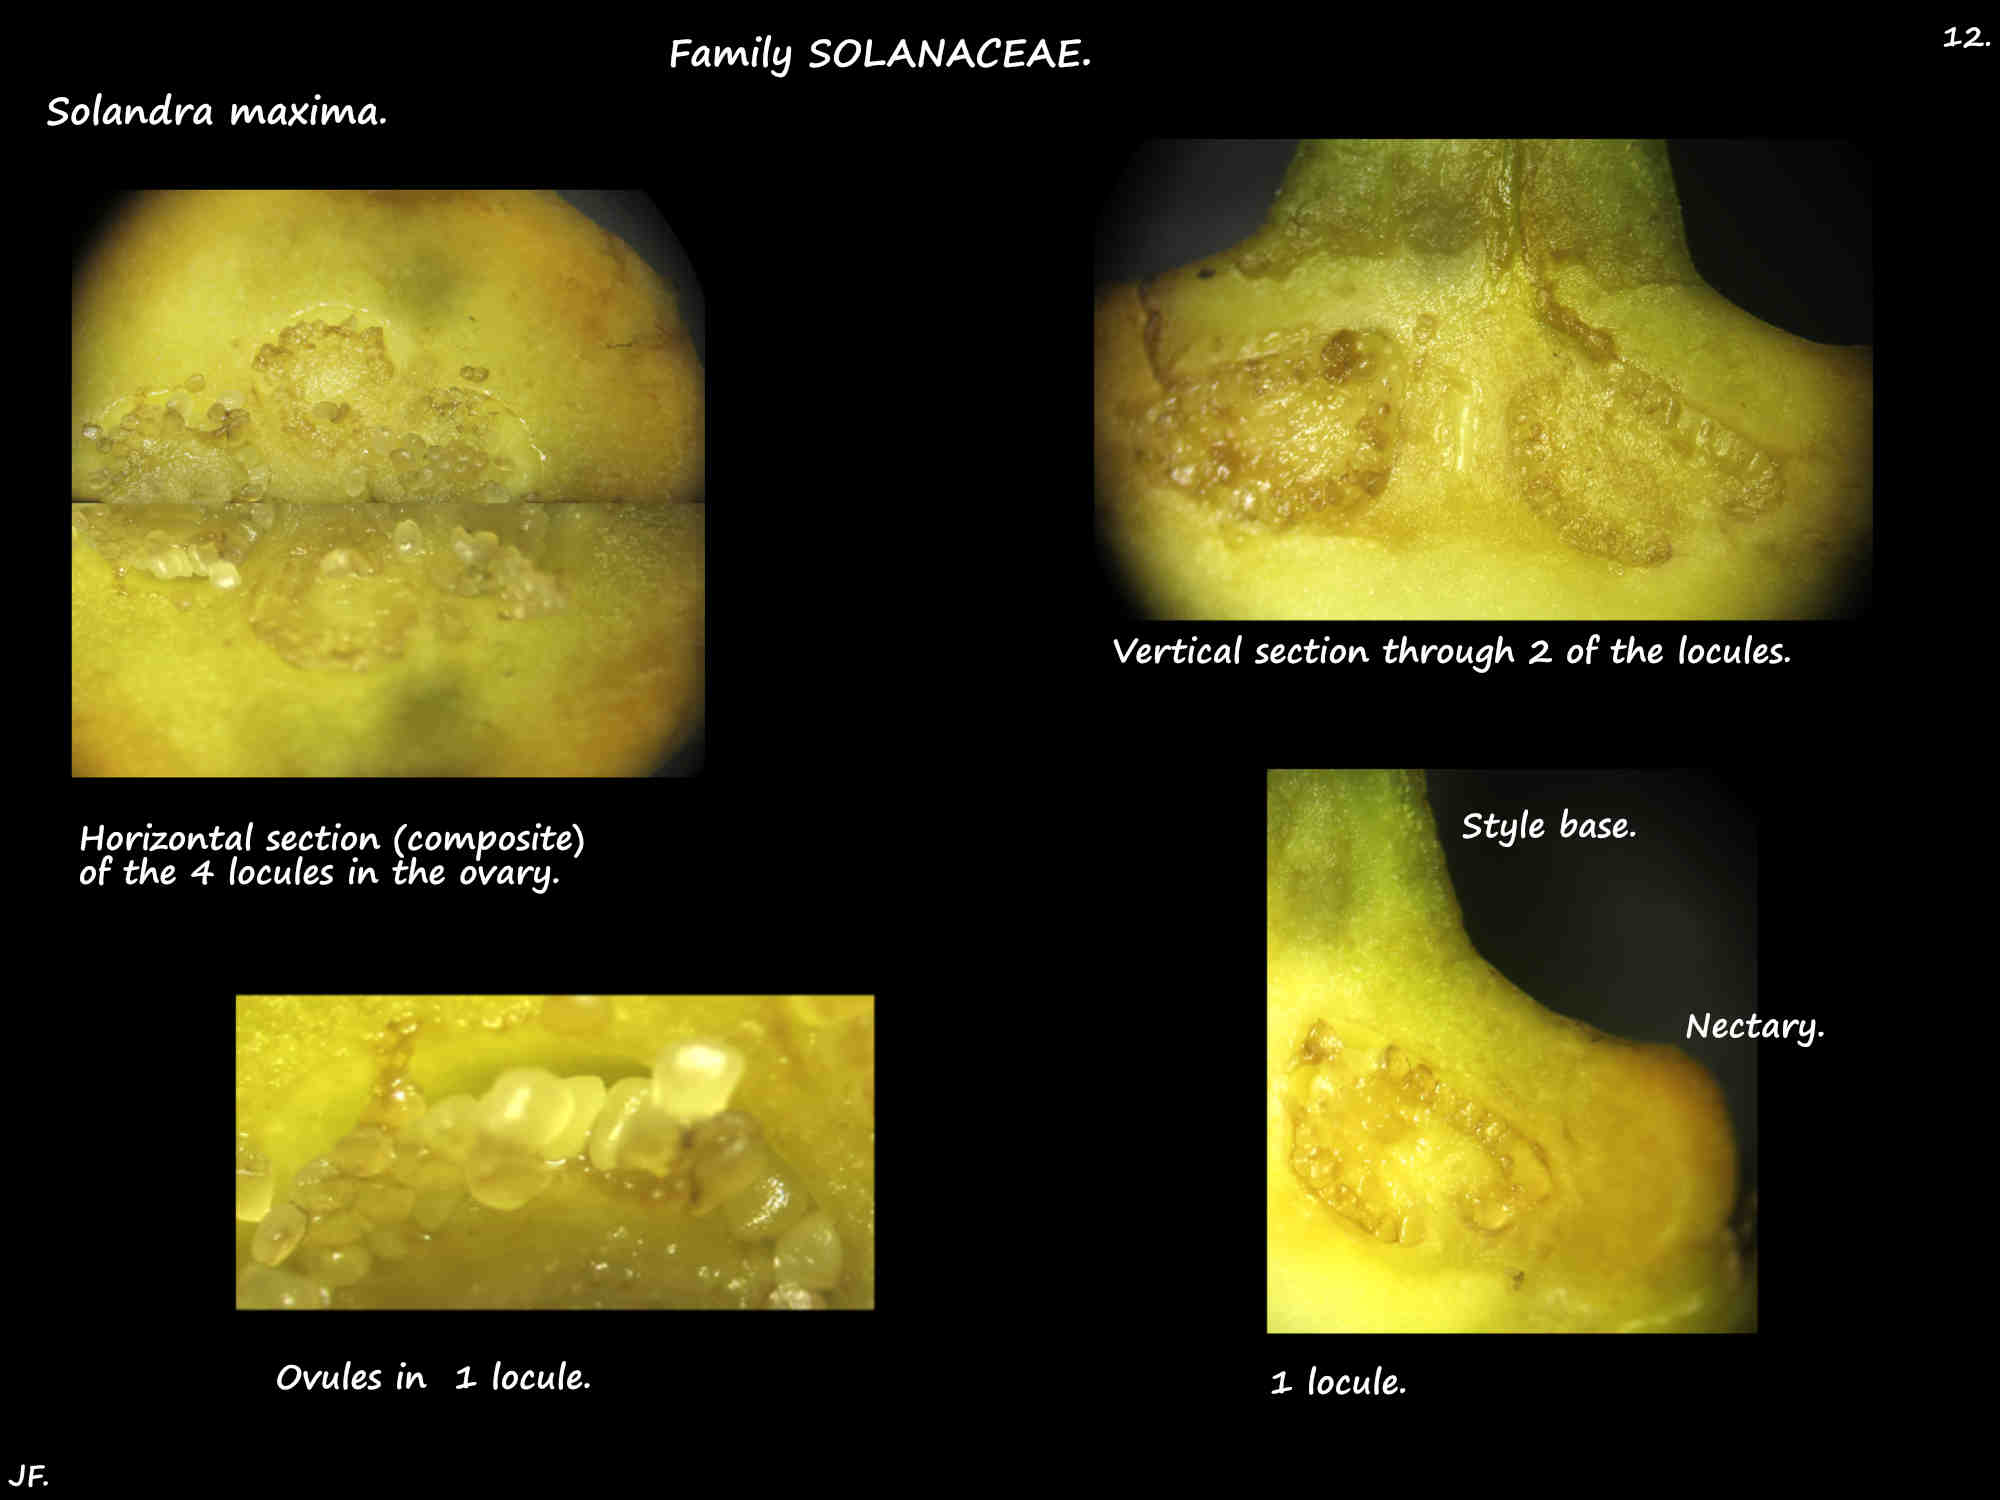 12 The 4 locules of a Solandra maxima ovary